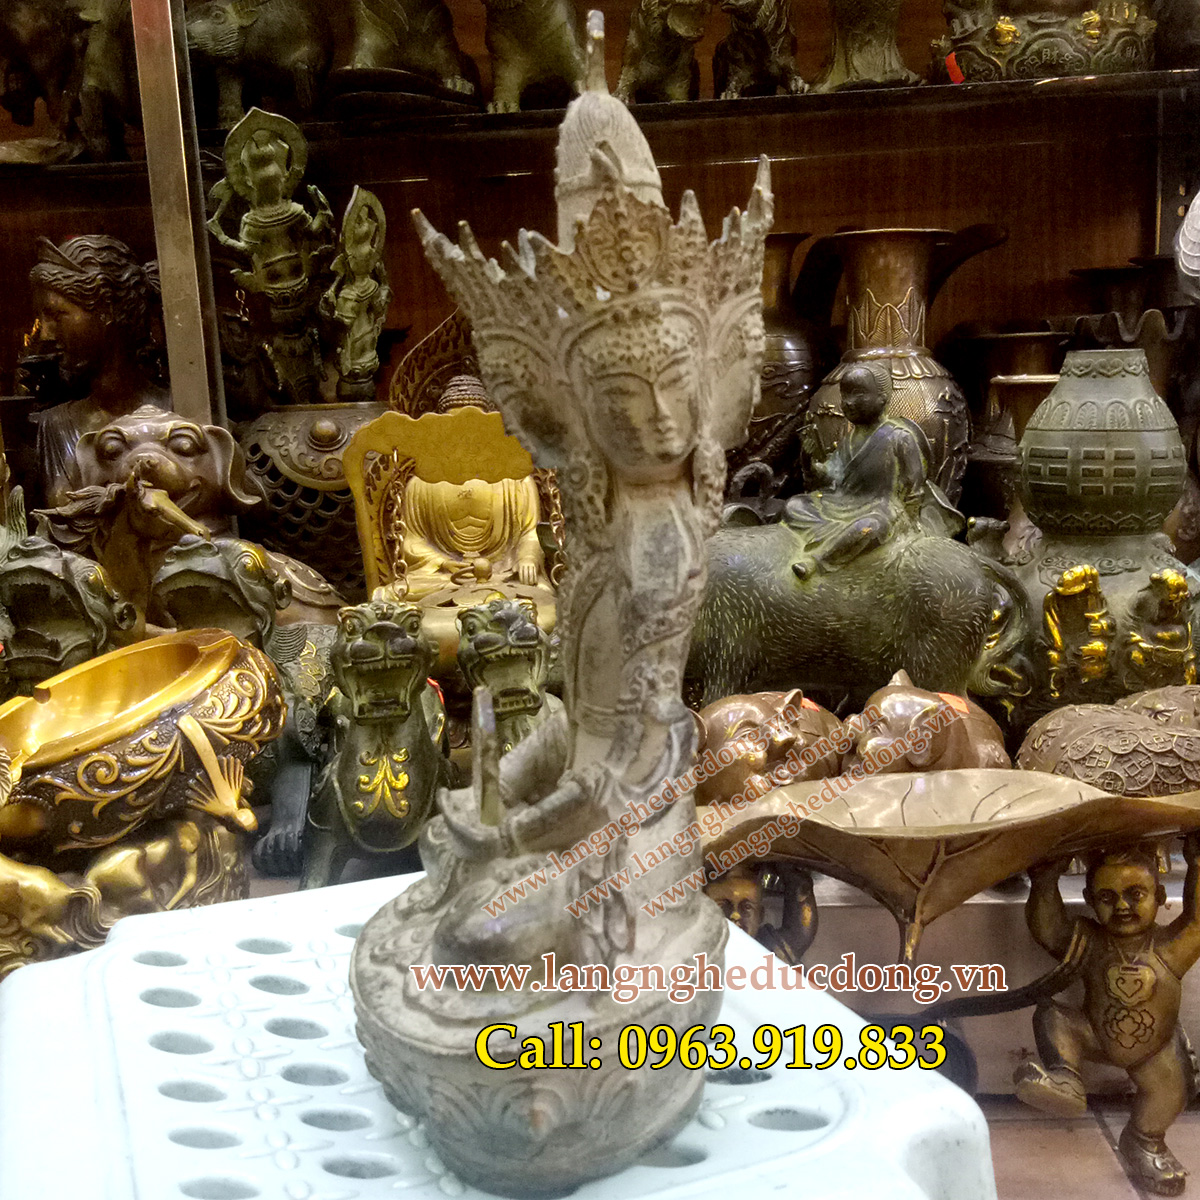 langngheducdong.vn - tượng phật, tượng đồng, tượng thờ cúng, tượng phật giả cổ